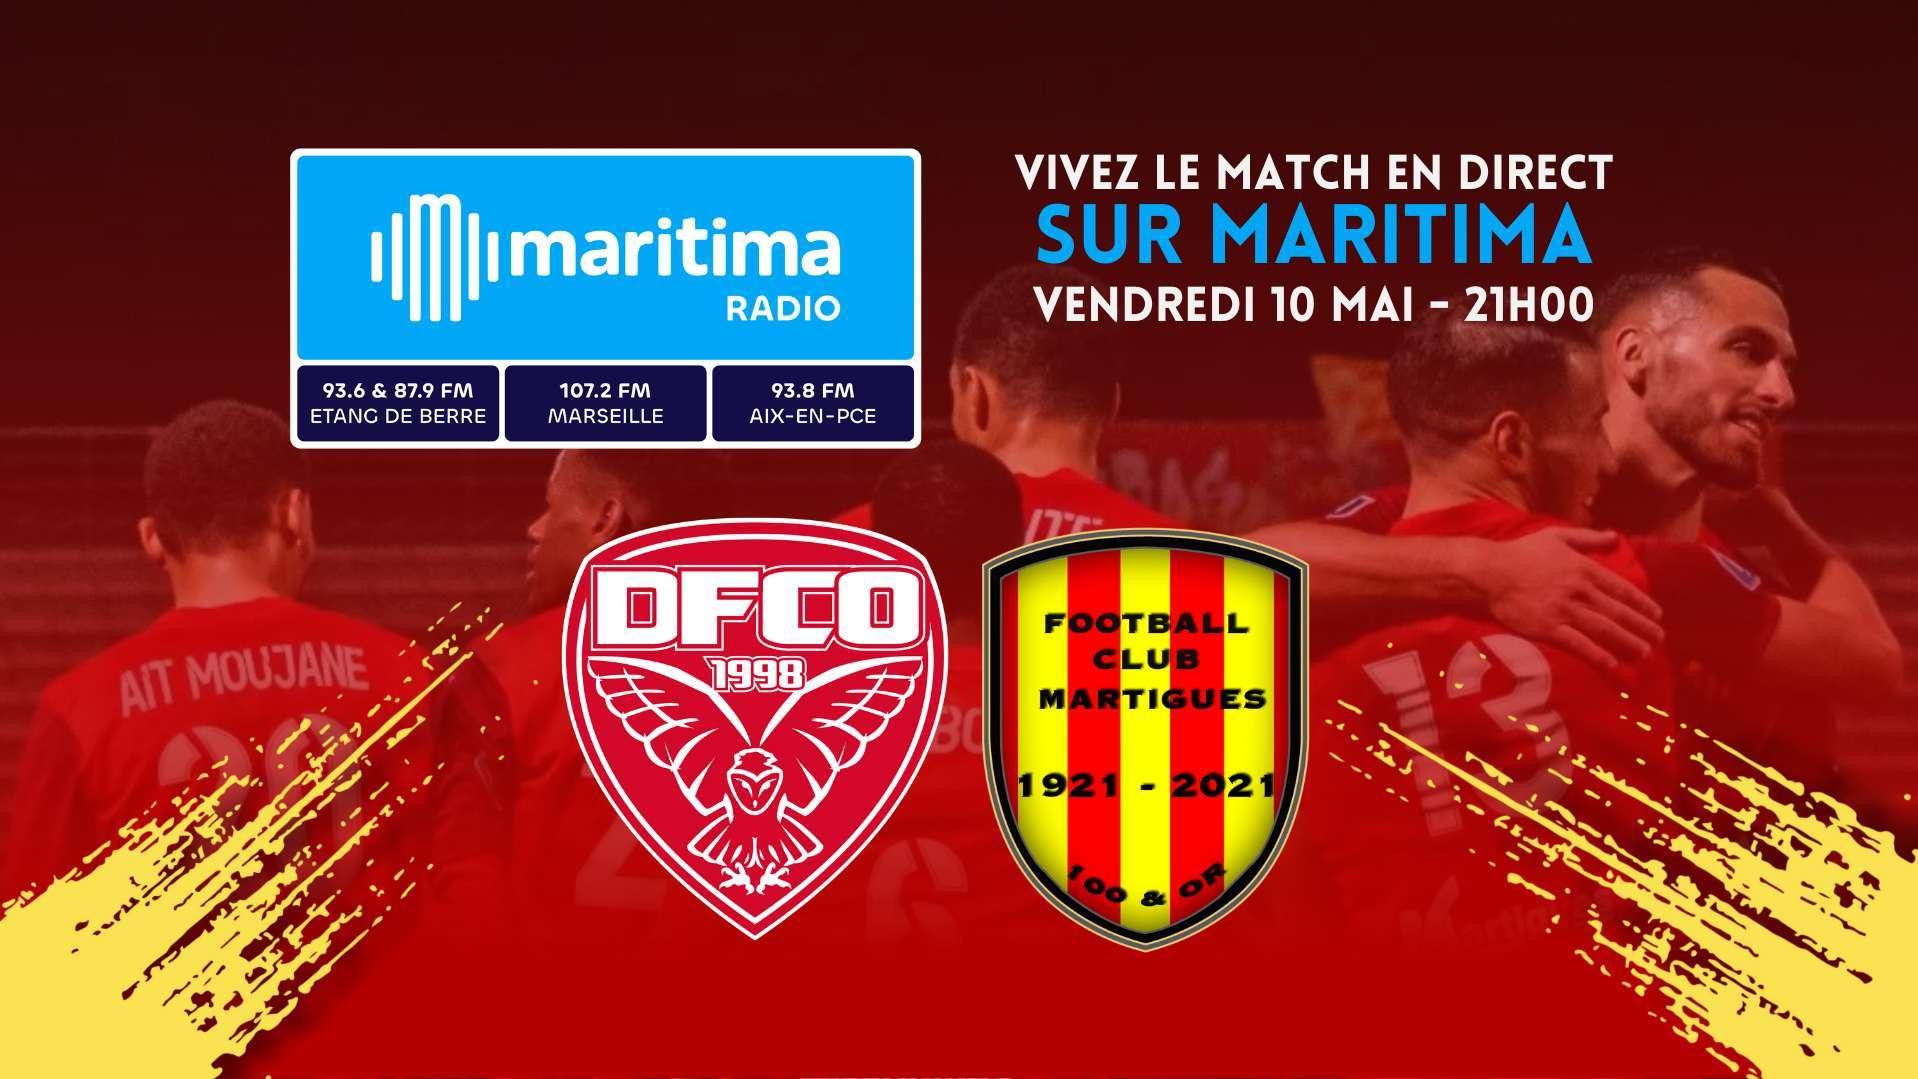 Maritima en direct à Dijon pour la potentielle accession du FC Martigues en Ligue 2 